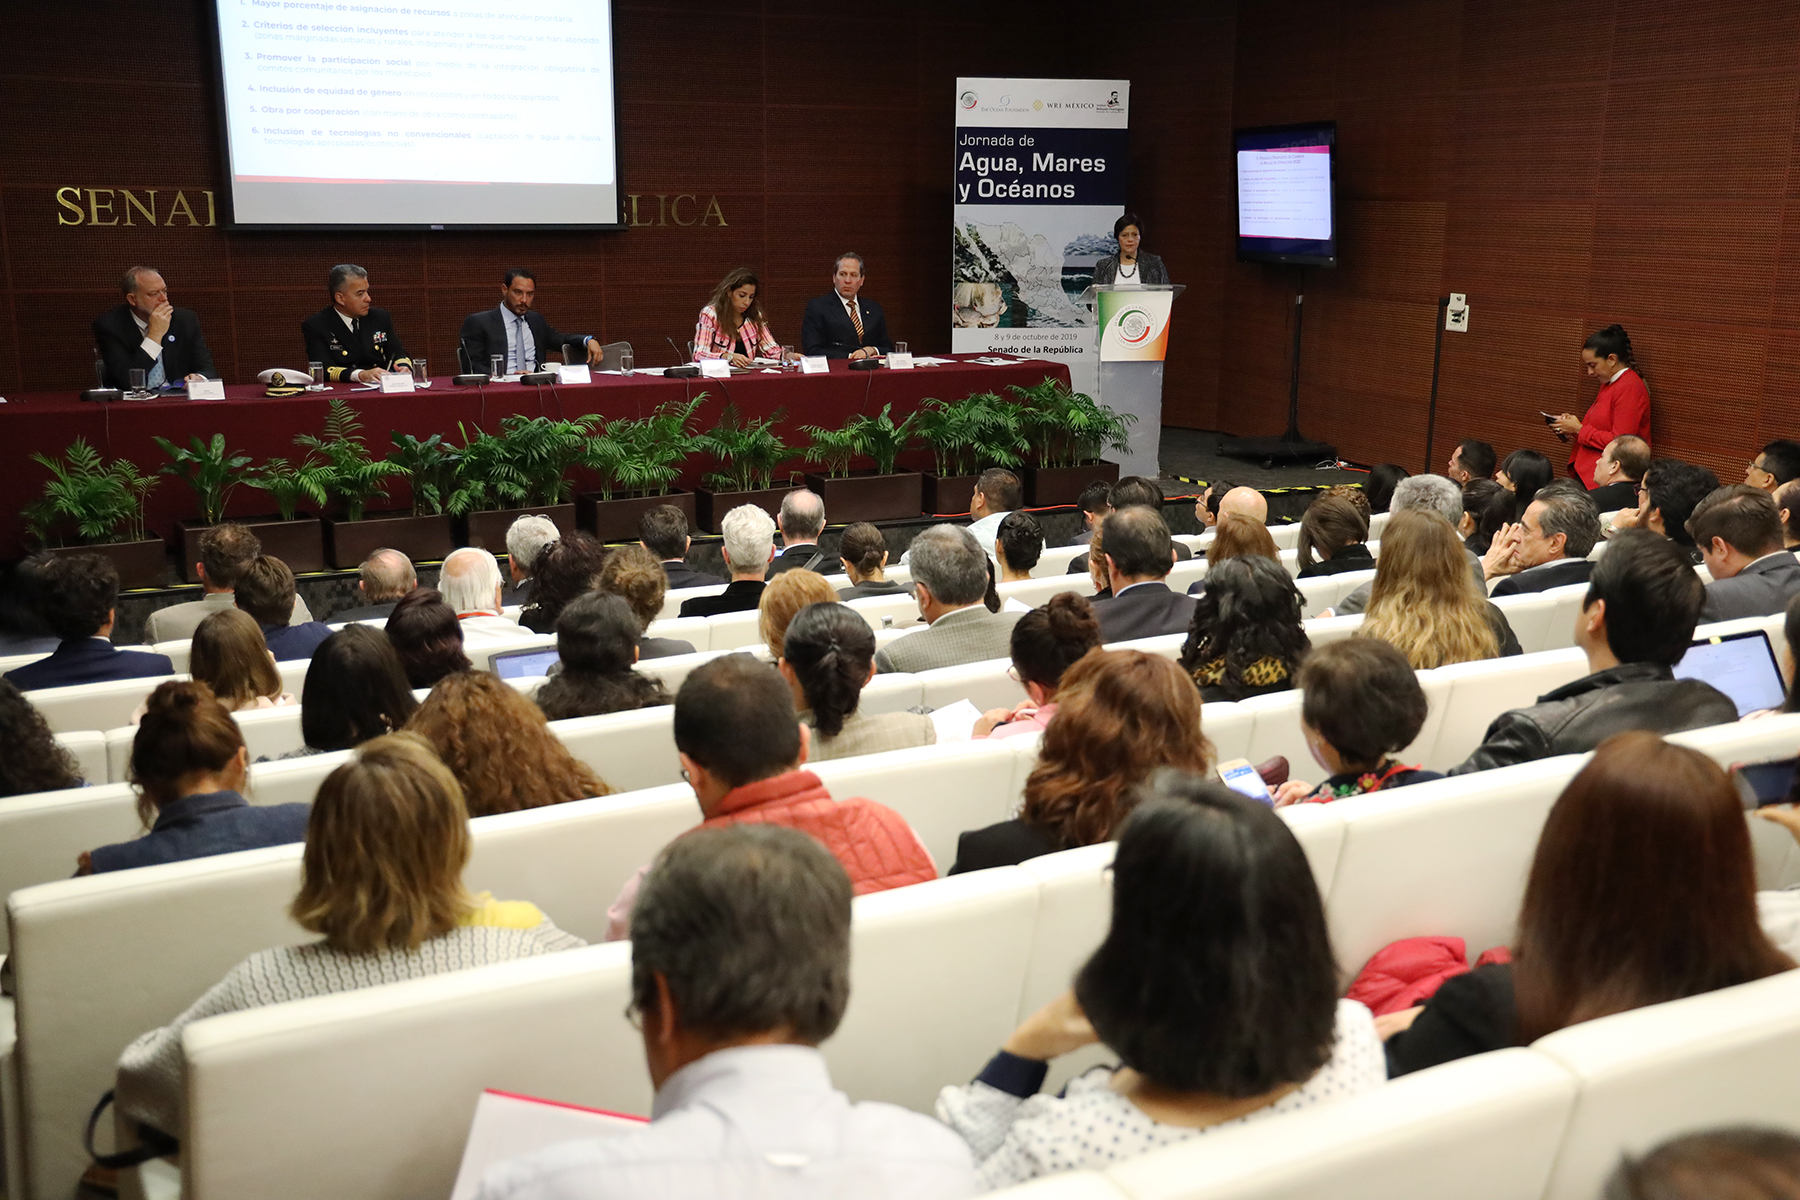 En su conferencia magistral Panorama General de la Situación Hídrica en México 2019-2024, la Directora General de Conagua indicó que el Gobierno de México subsidia a estados y municipios a través de diversos programas.